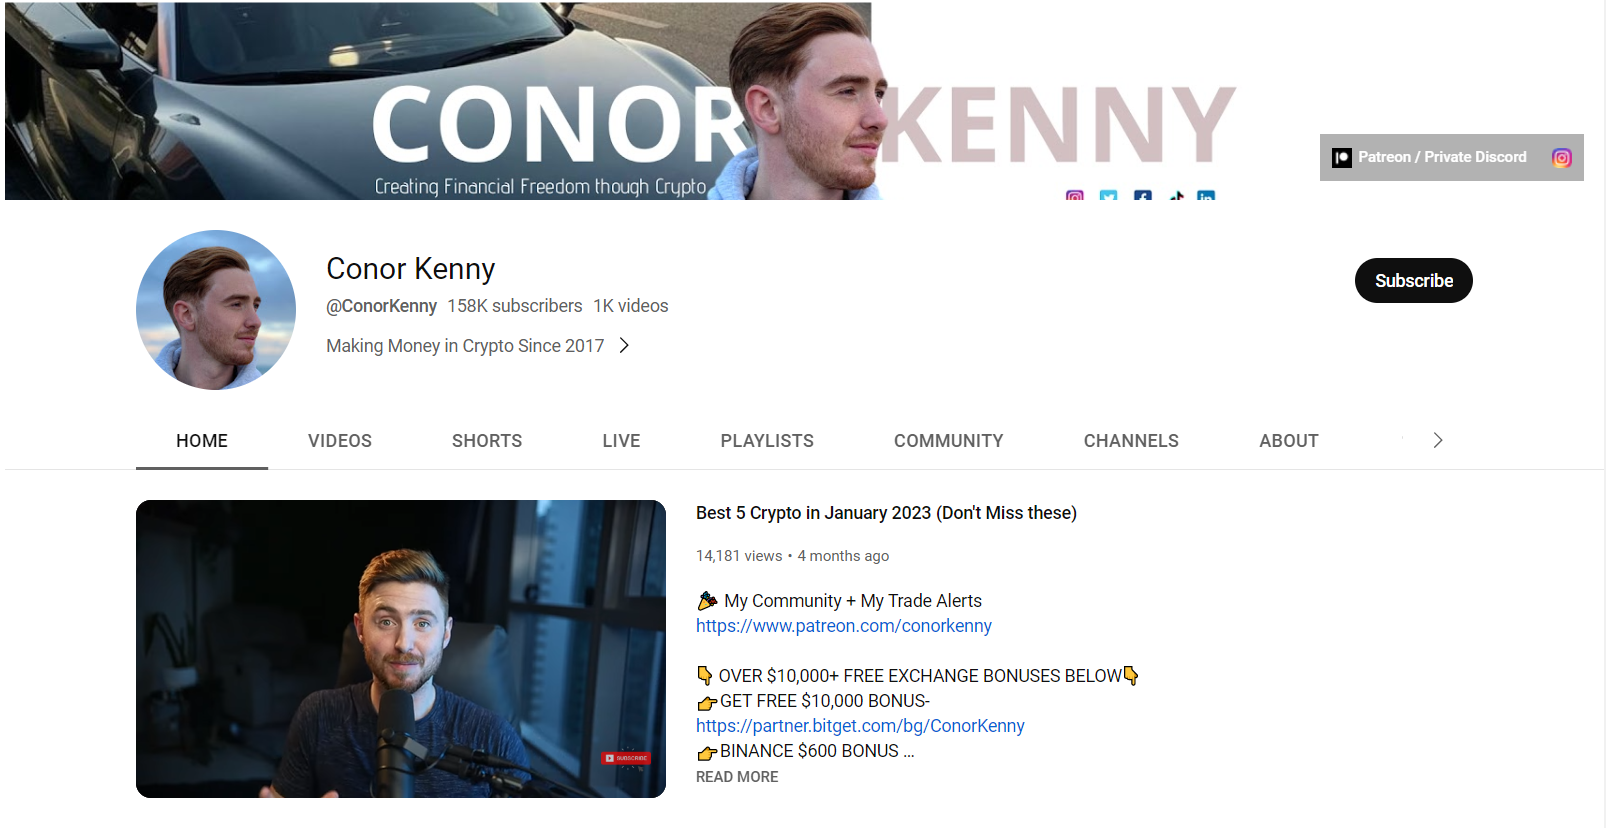 Conor Kenny